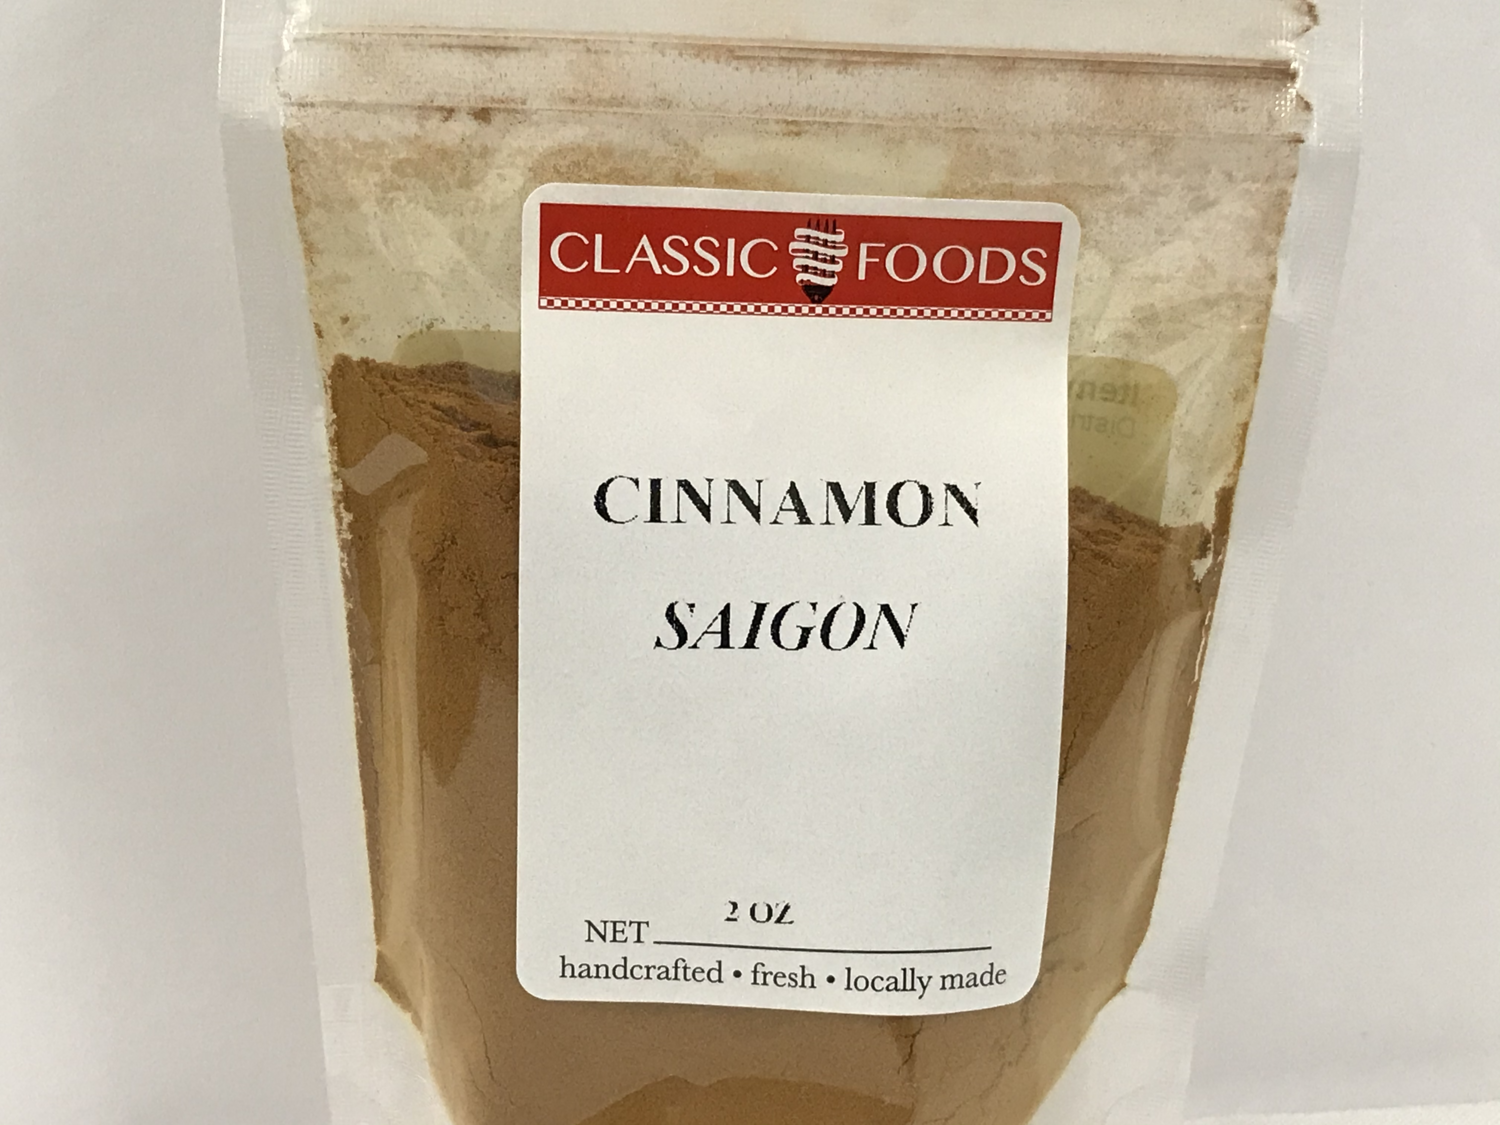 CINNAMON-SAIGON 2 oz